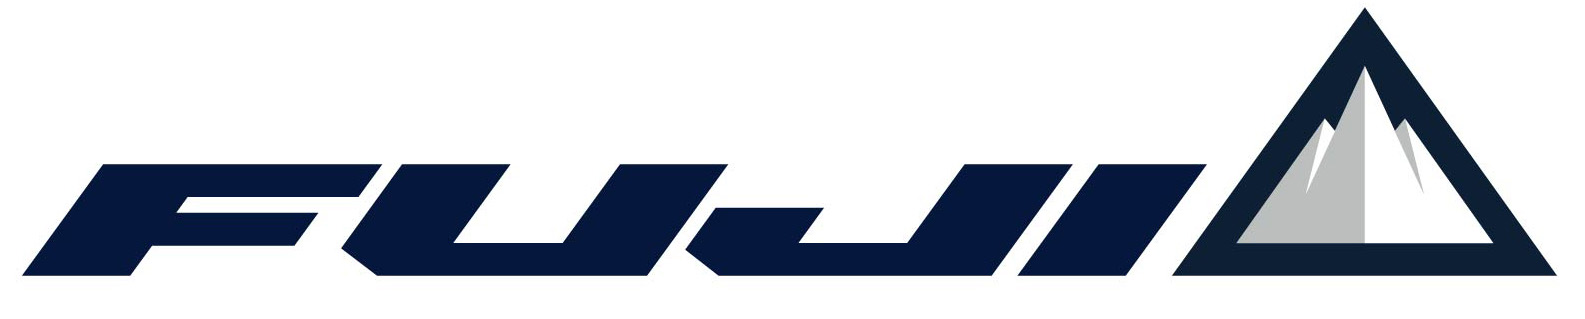 Fuji_logo.jpg